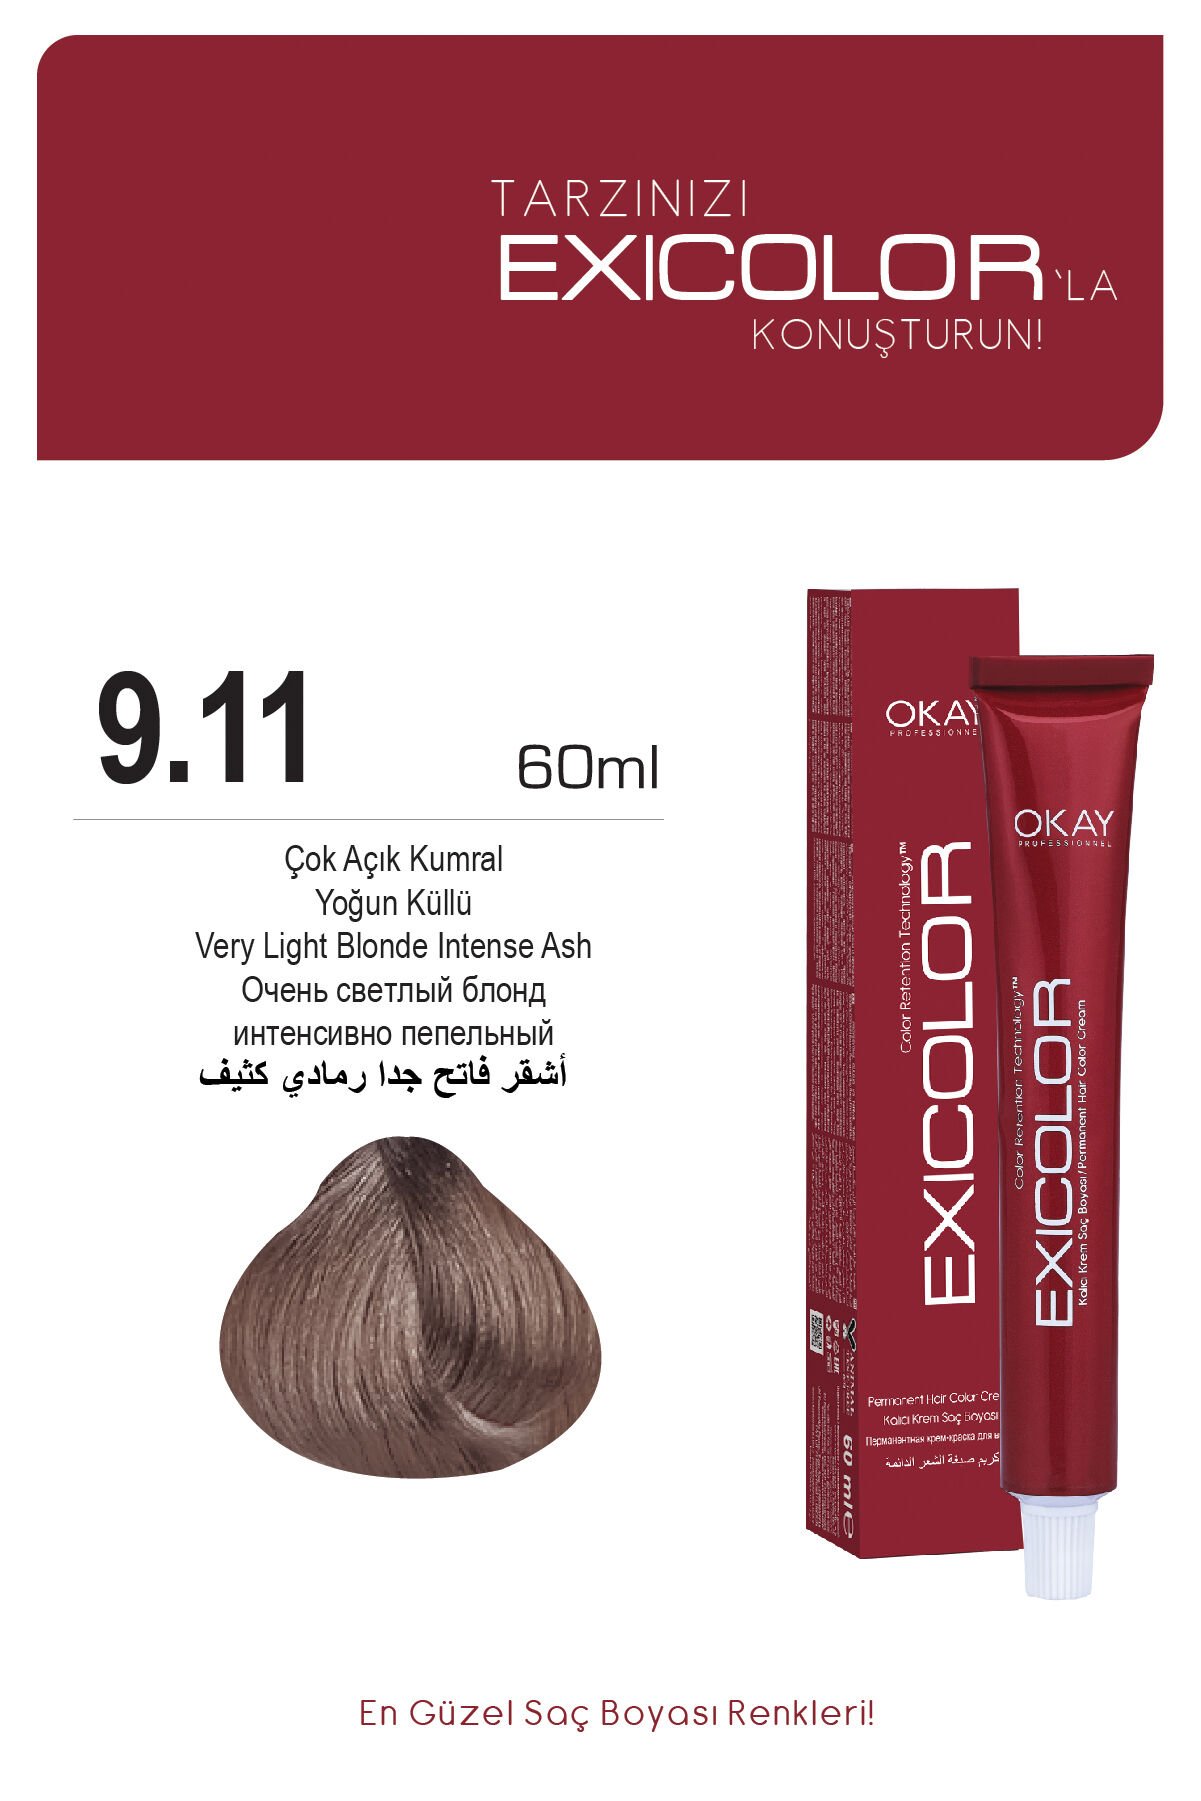 Exicolor 9.11 Çok Açık Kumral Yoğun Küllü - Kalıcı Krem Saç Boyası 60 ml Tüp